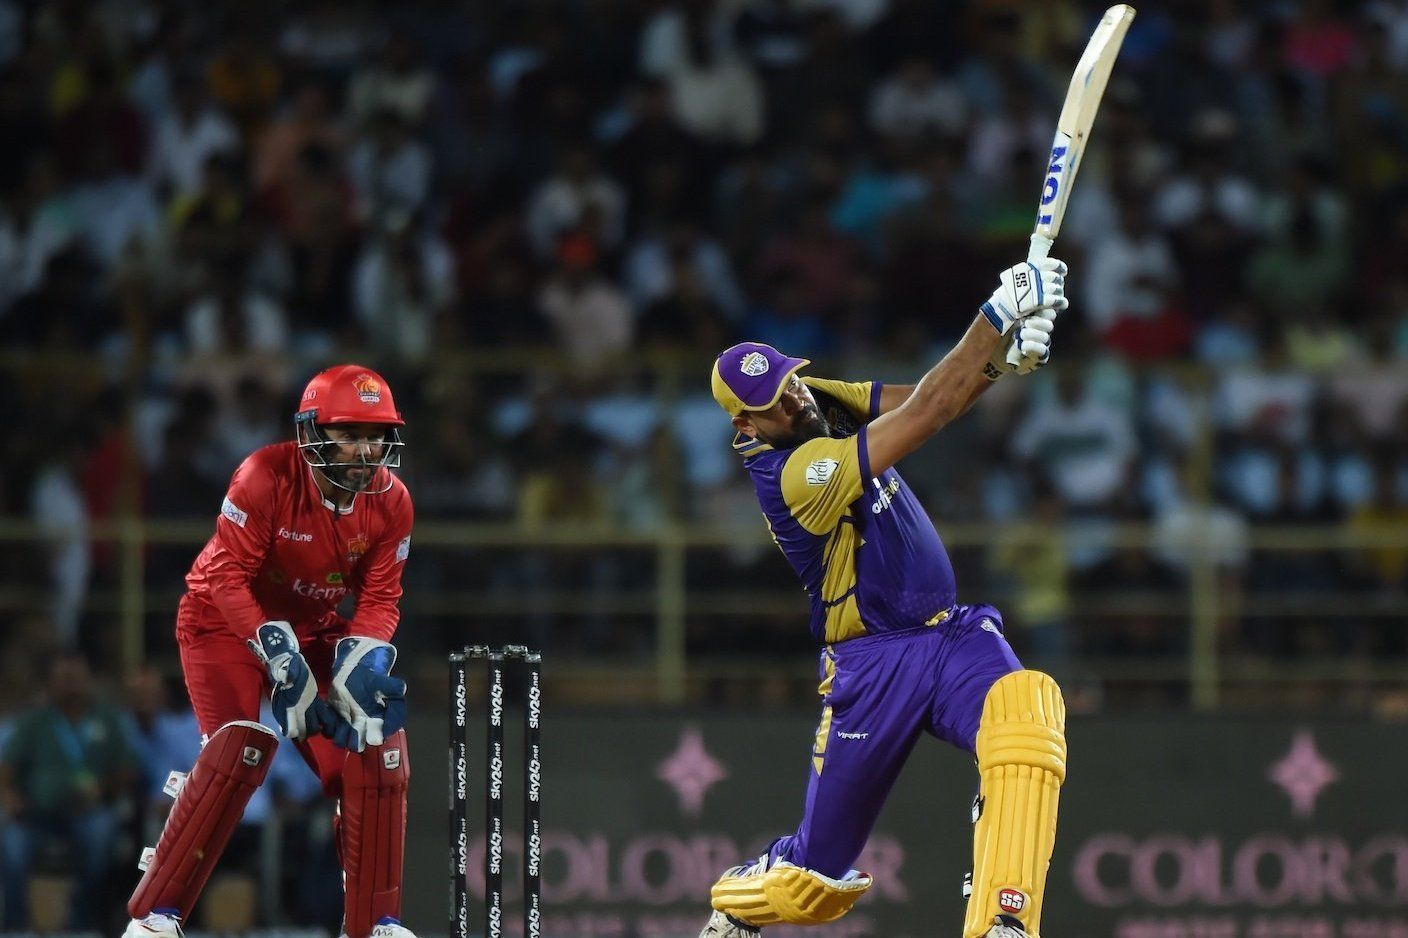 युसूफ पठान ने धाकड़ बल्लेबाजी का प्रदर्शन किया 